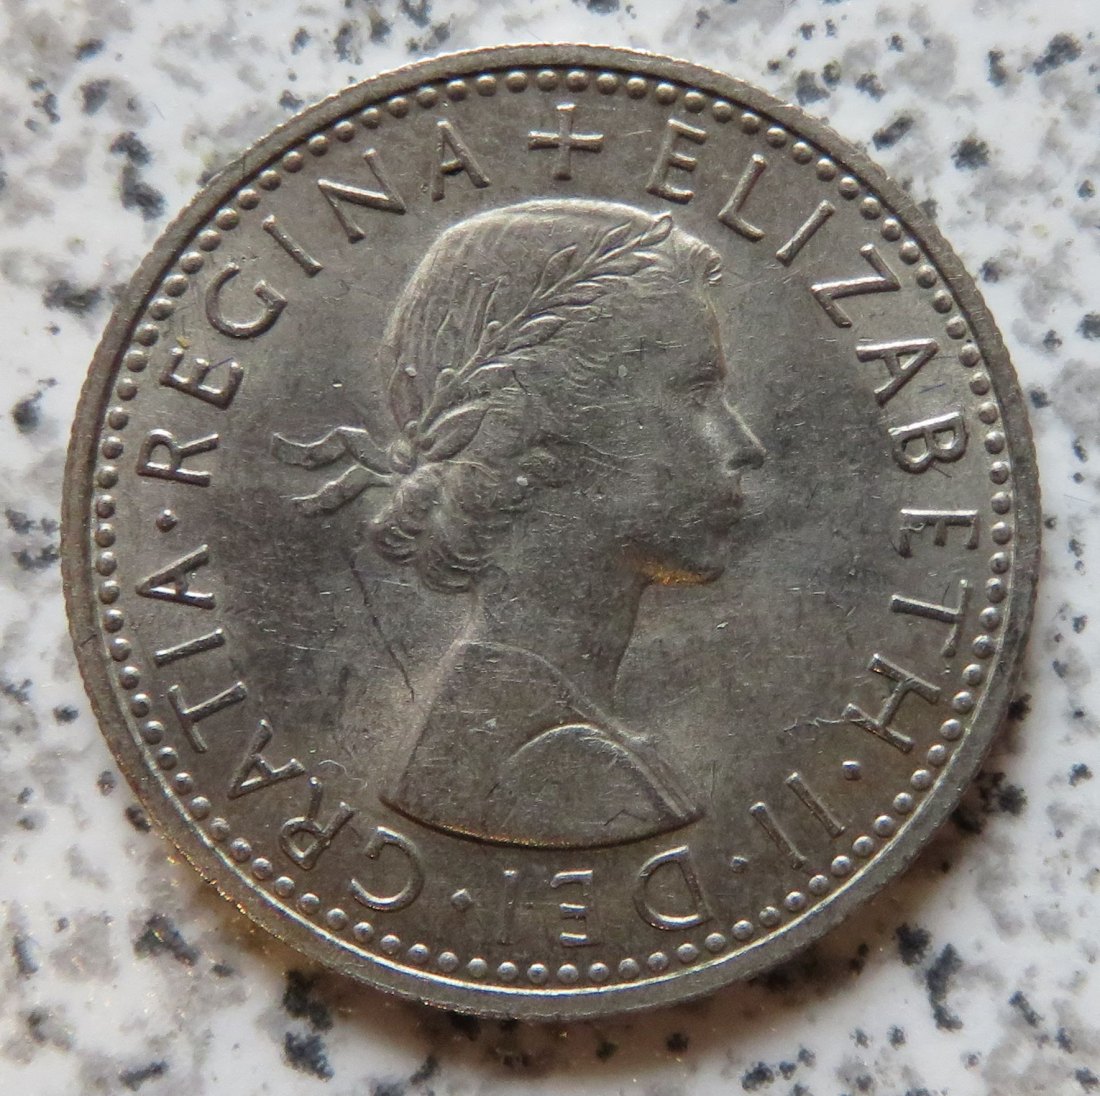  Großbritannien 6 Pence 1965, vz (2)   